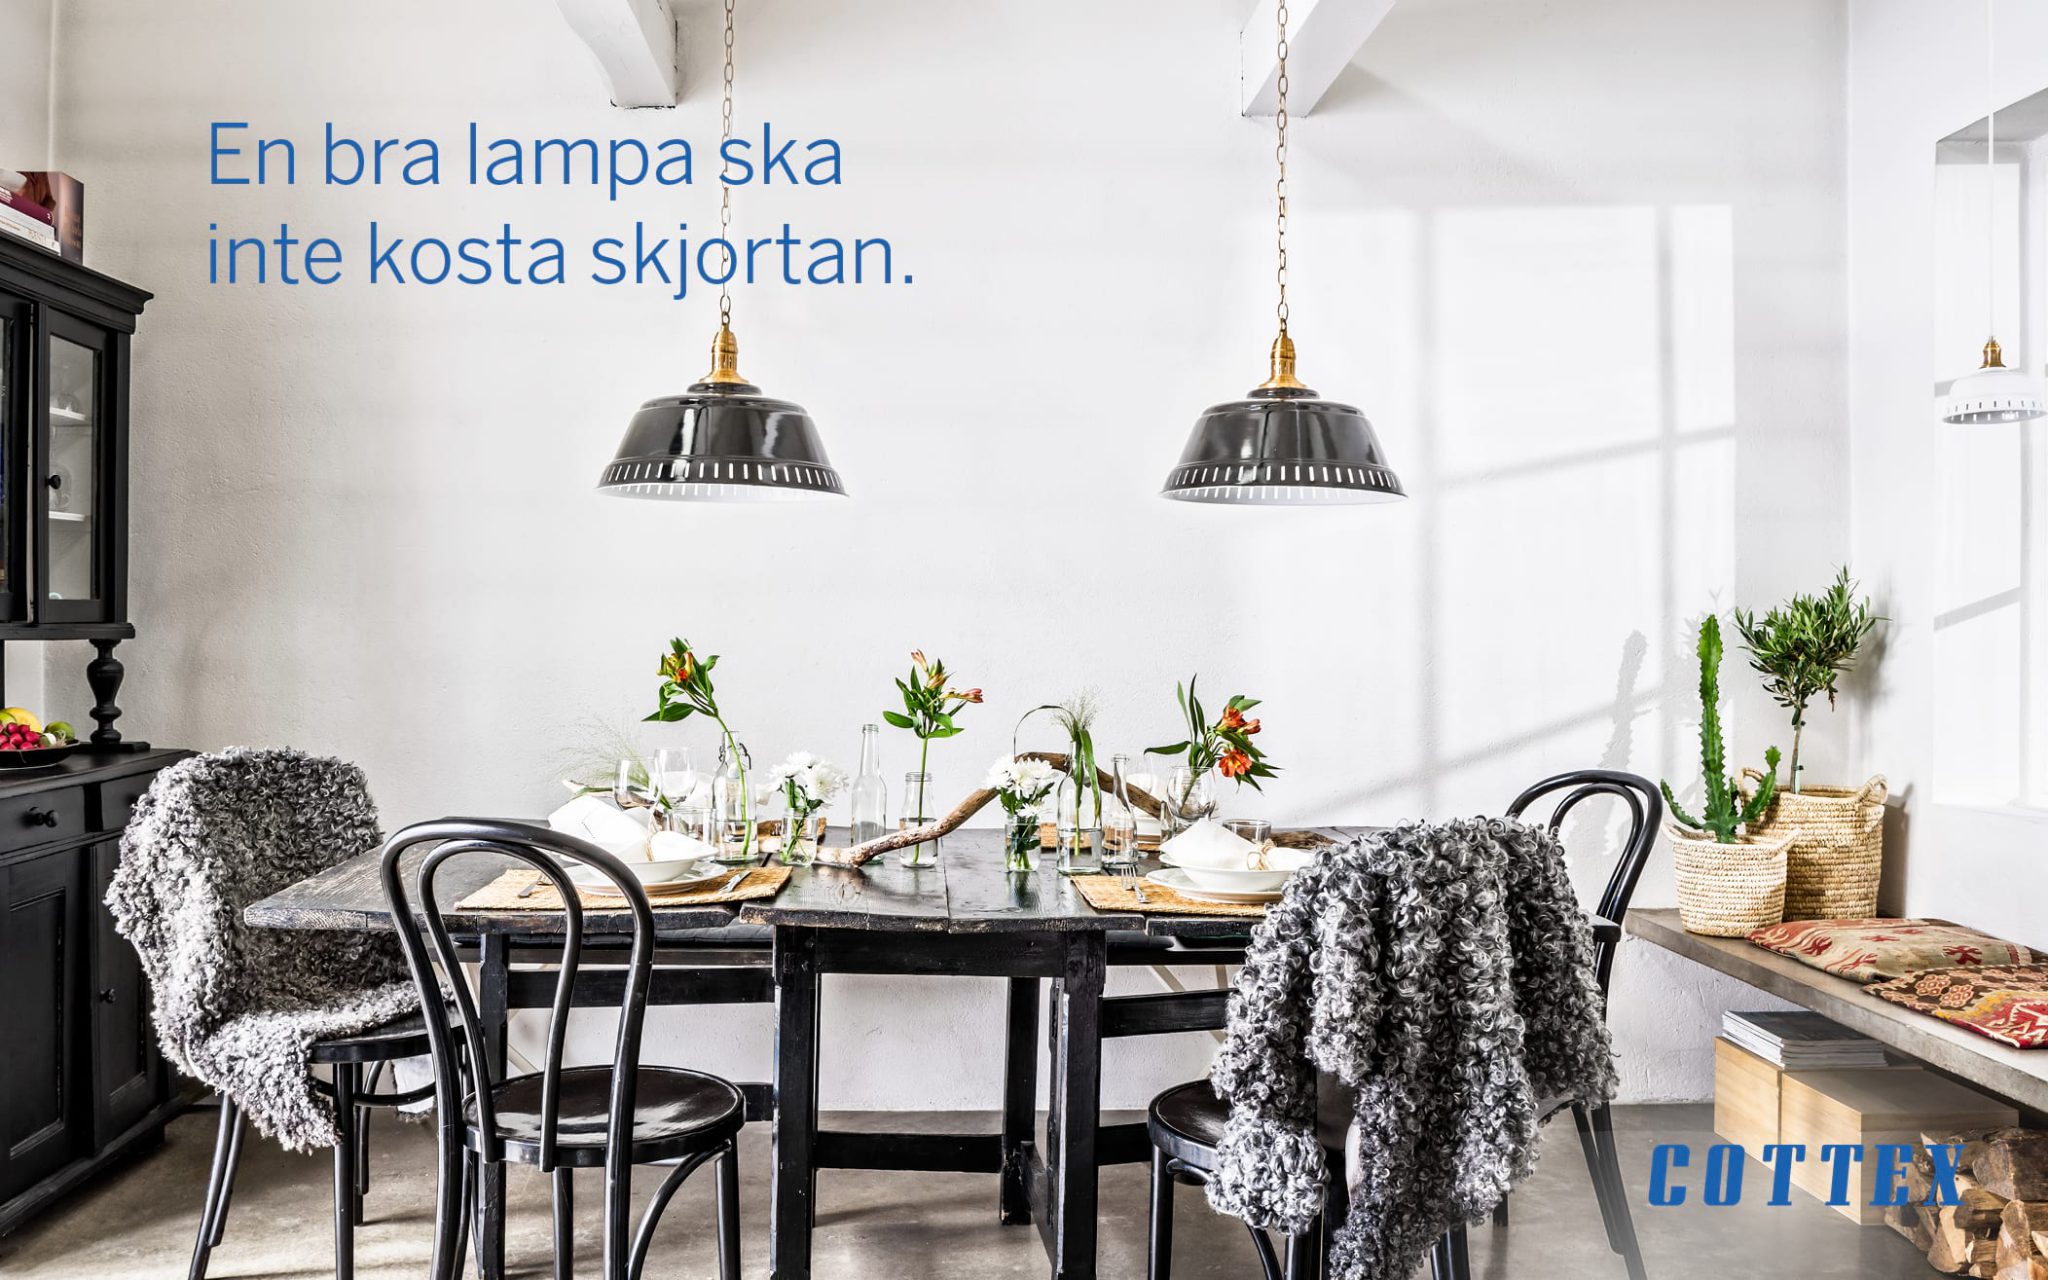 Reklam för cottex på en matsal med svarta möbler och hängande lampor